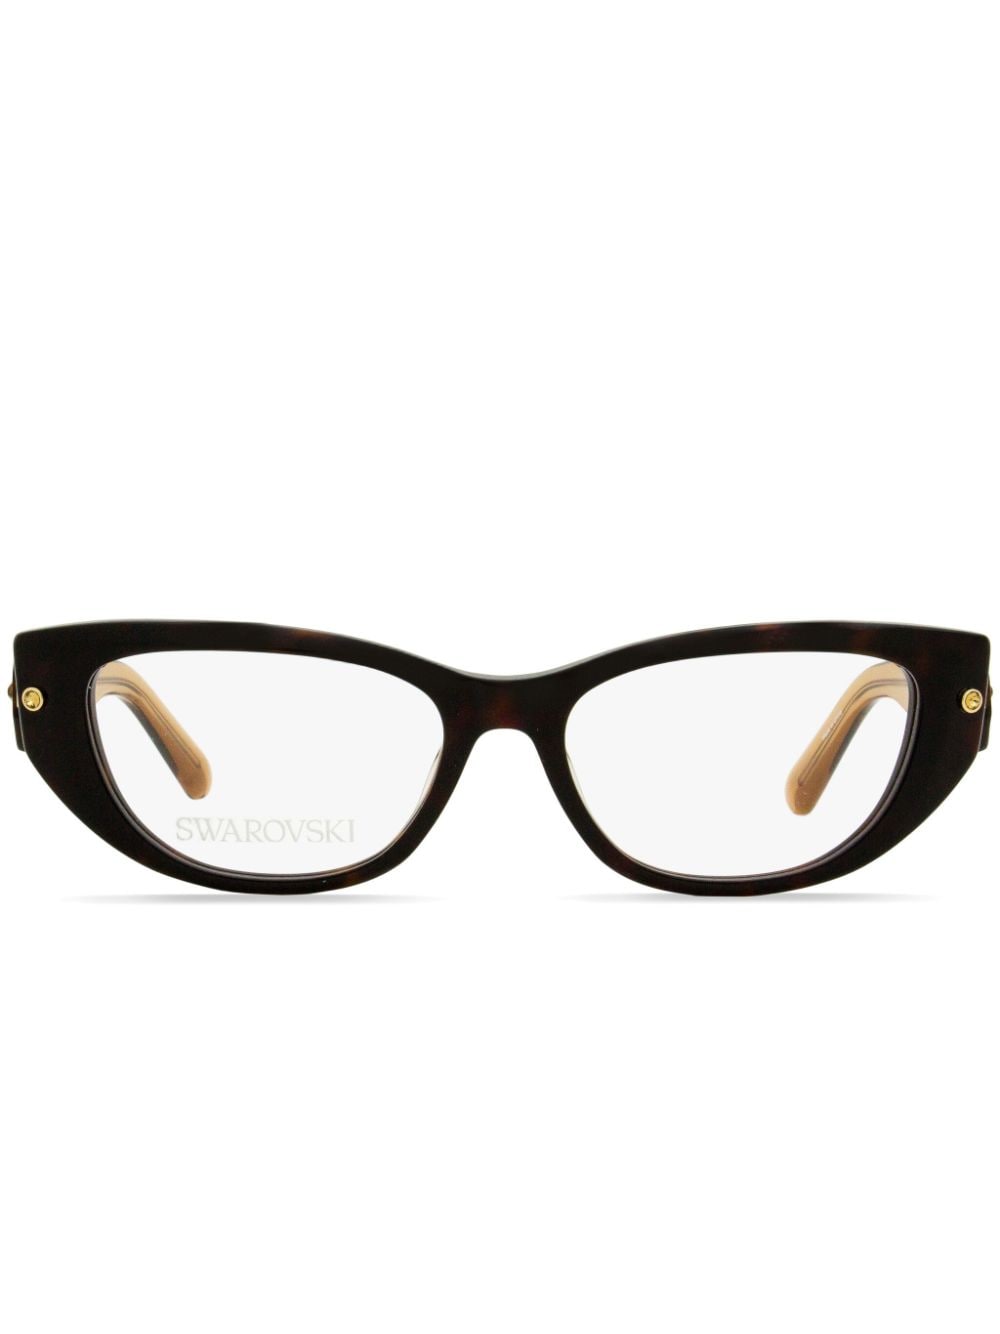 Swarovski Brille mit eckigem Gestell - Braun von Swarovski